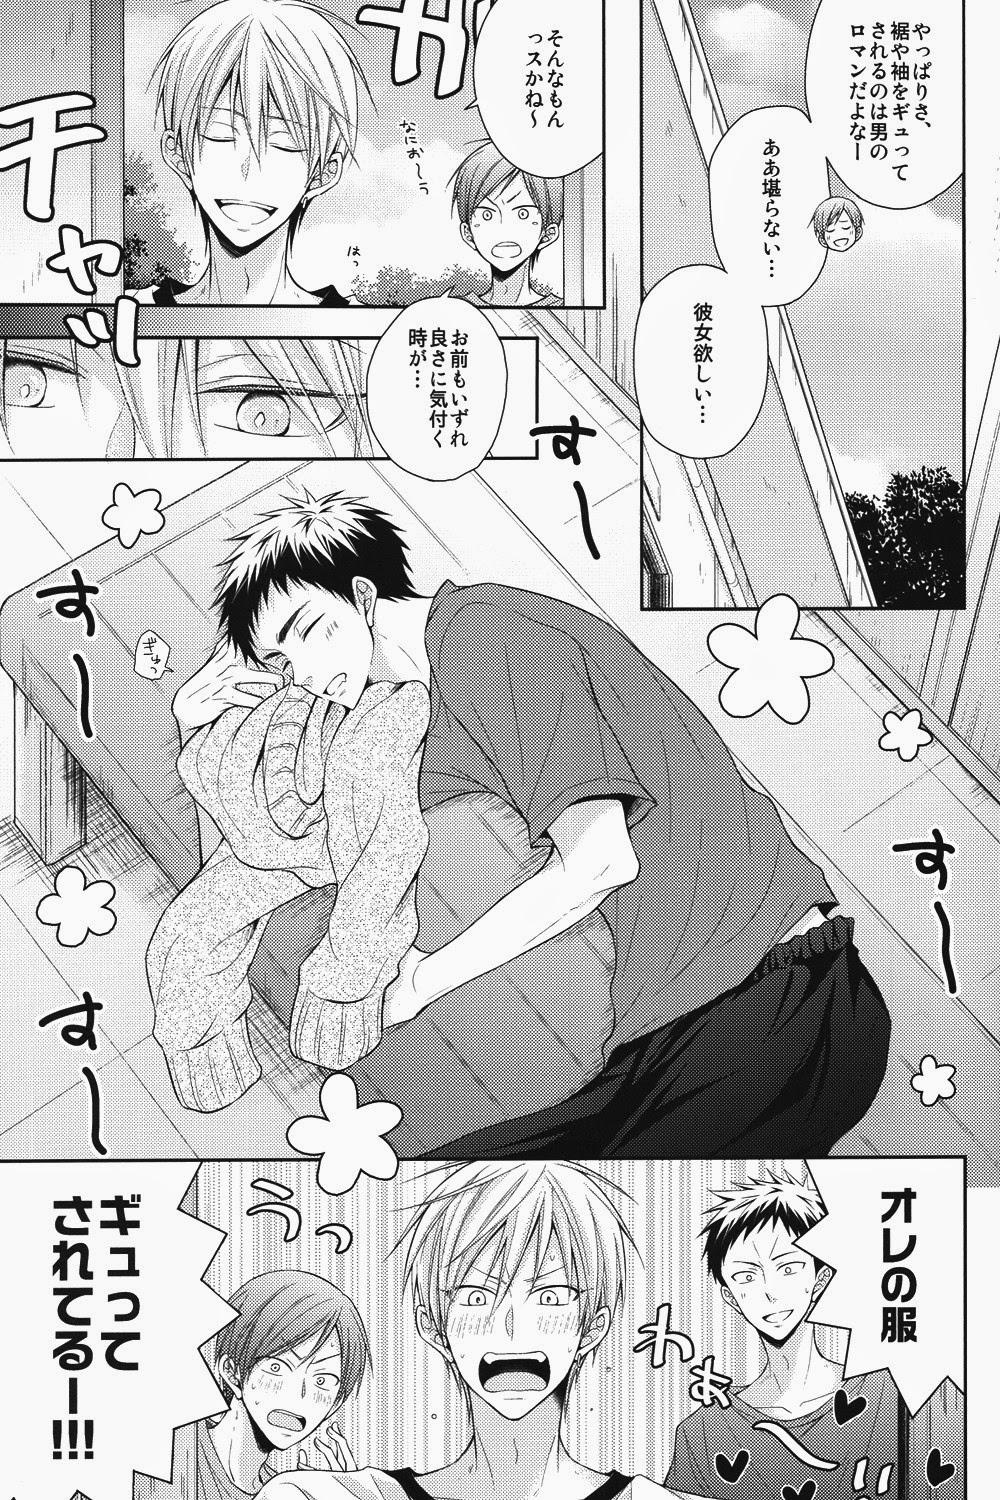 4some Seishun Intense - Kuroko no basuke Playing - Page 4